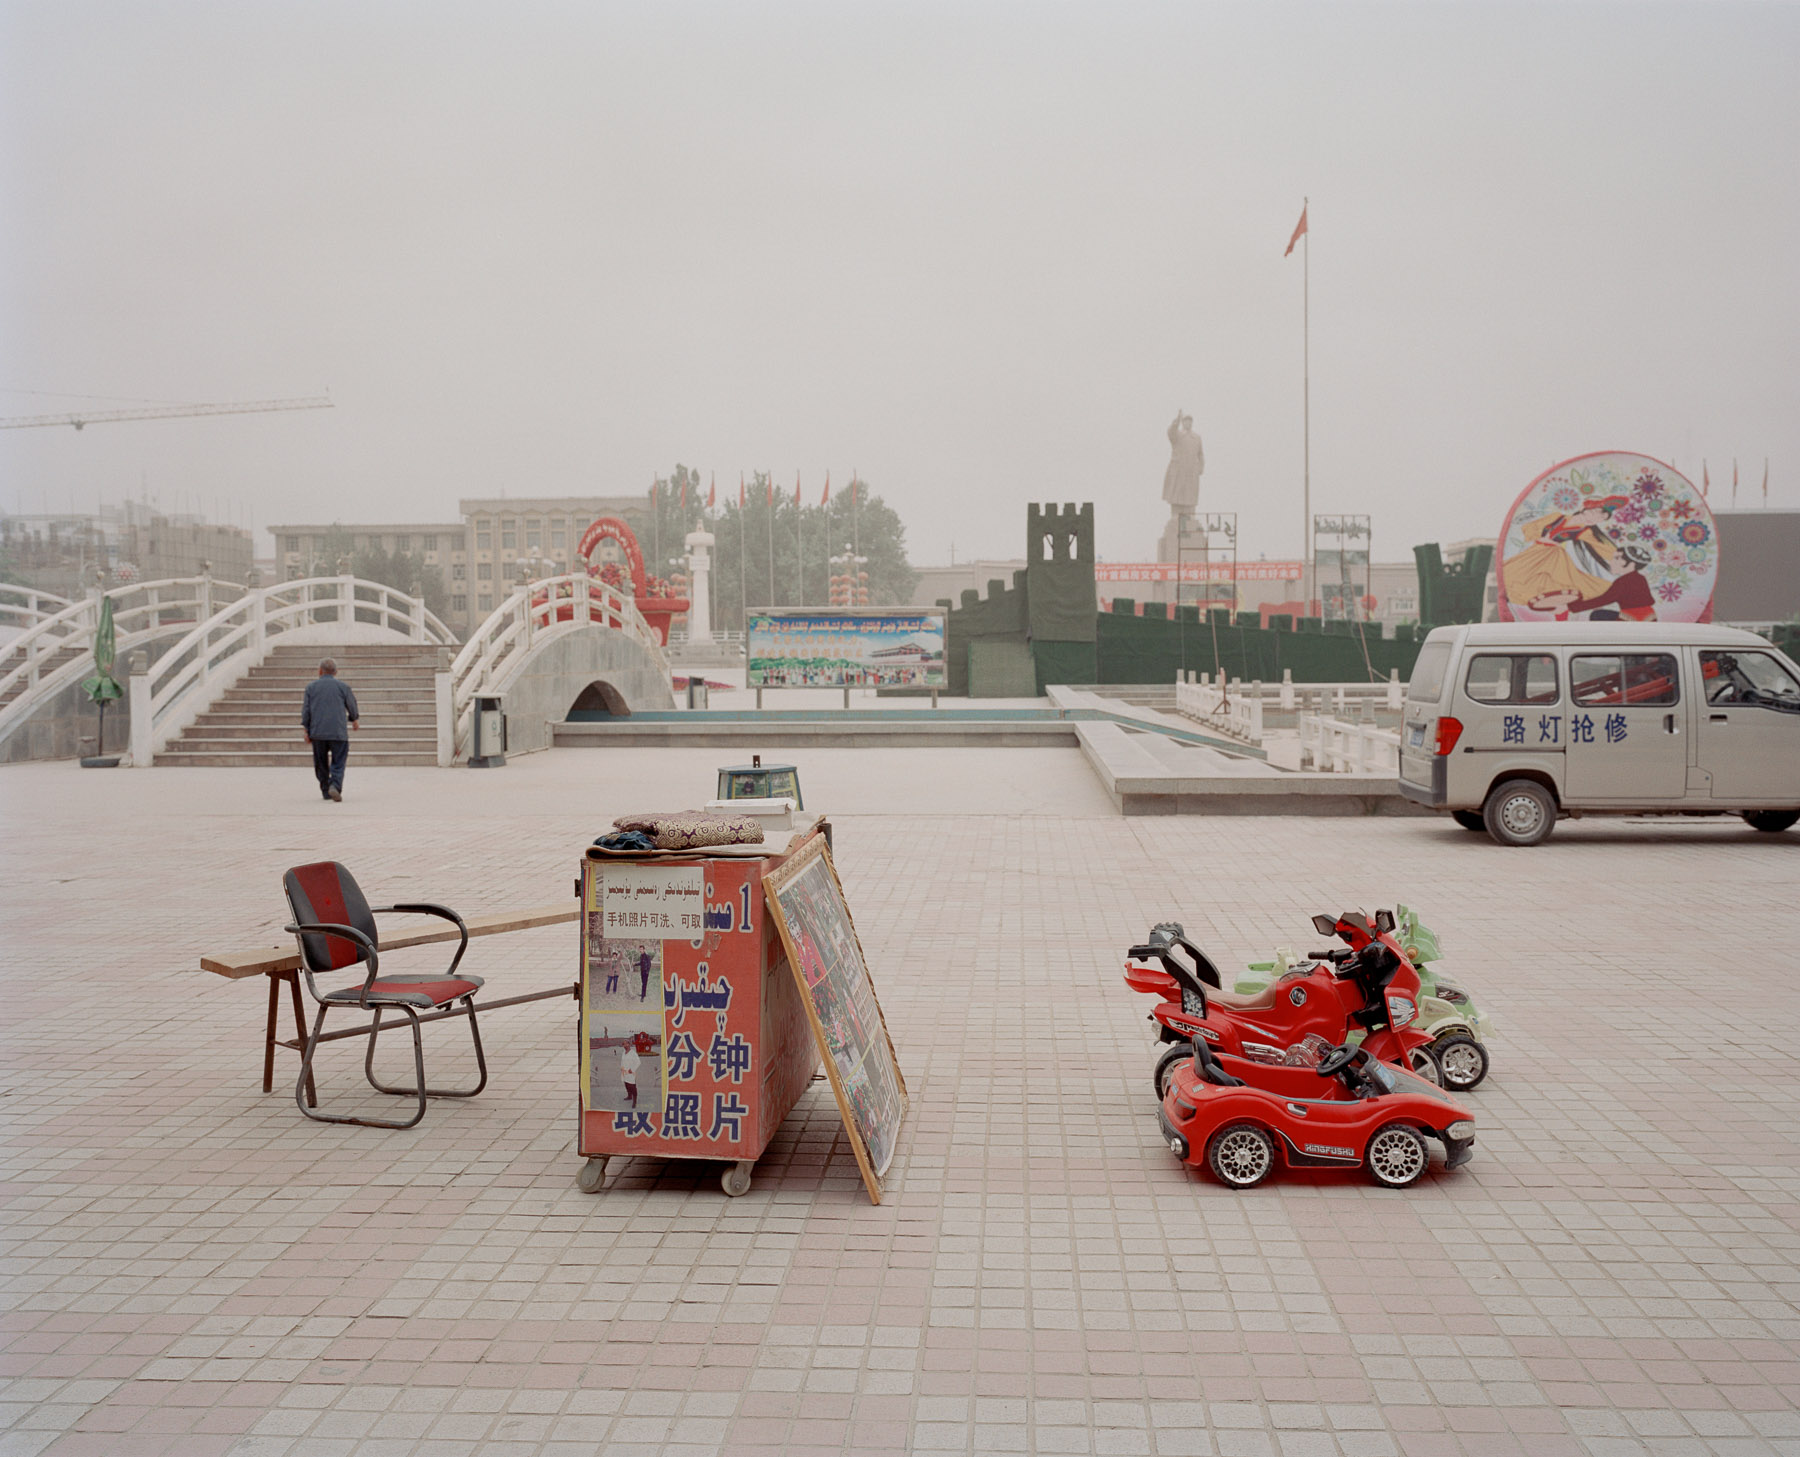  May 2016. Xinjiang province, China. Around the main square in Kashgar.  